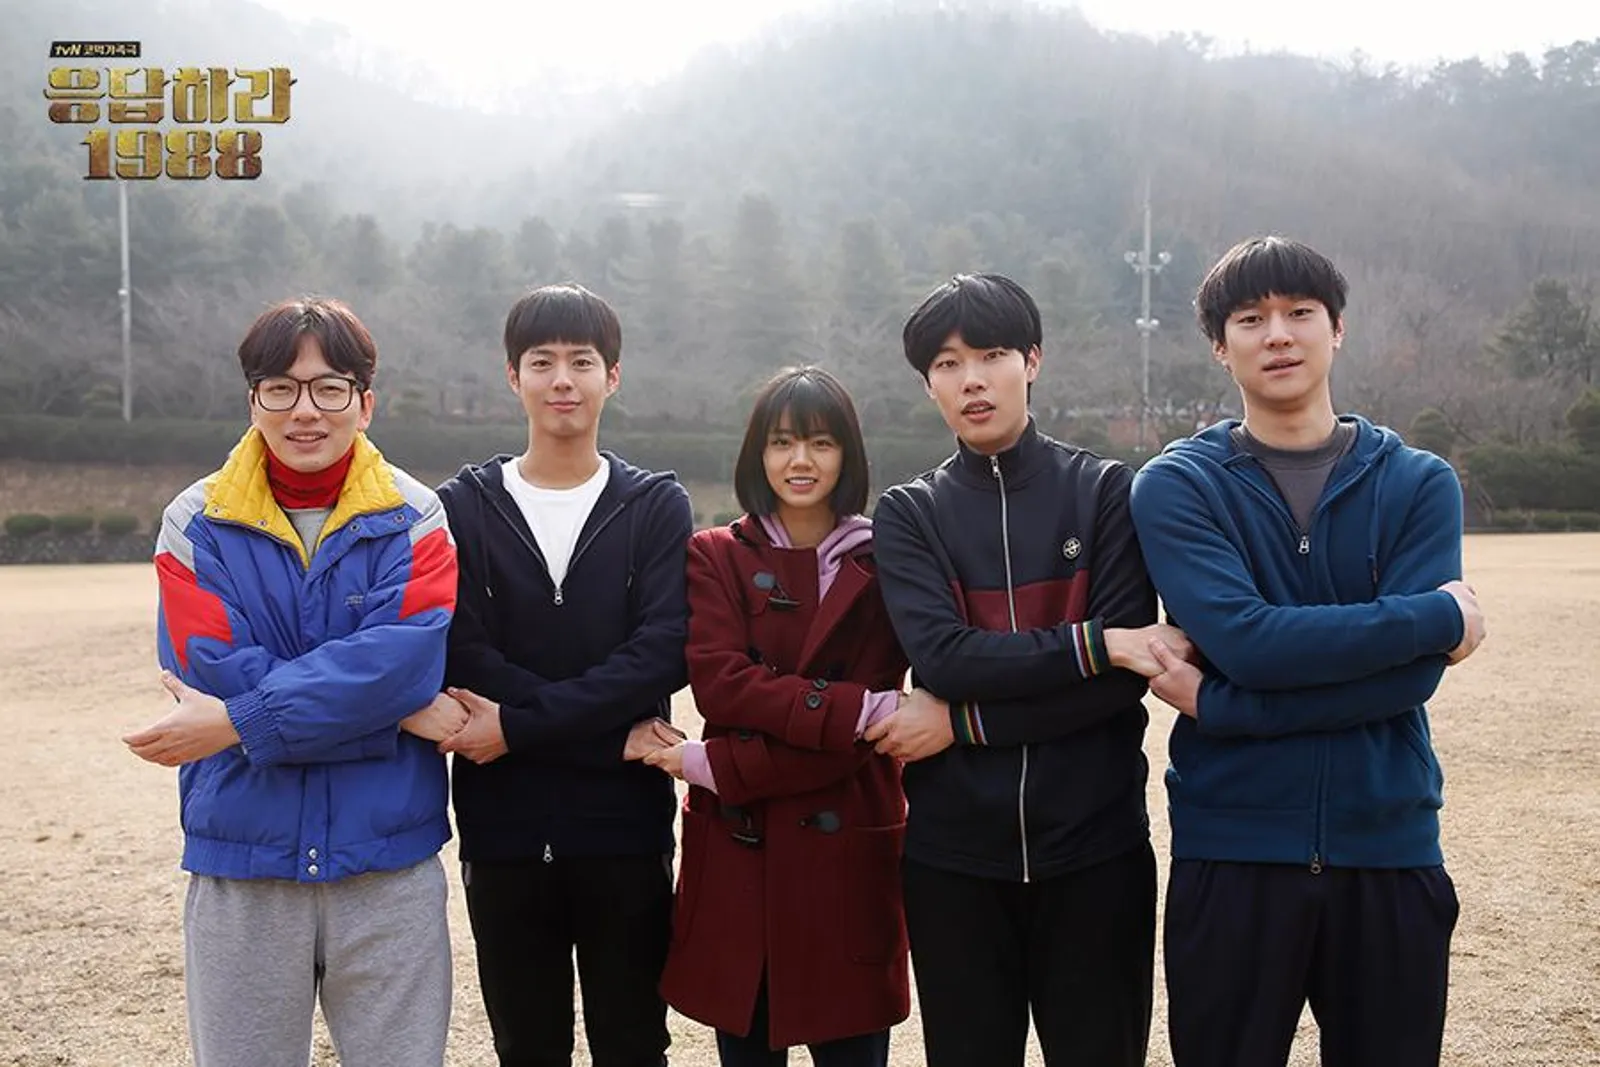 10 Drama tvN Rating Tertinggi, Queen of Tears yang Kedua!